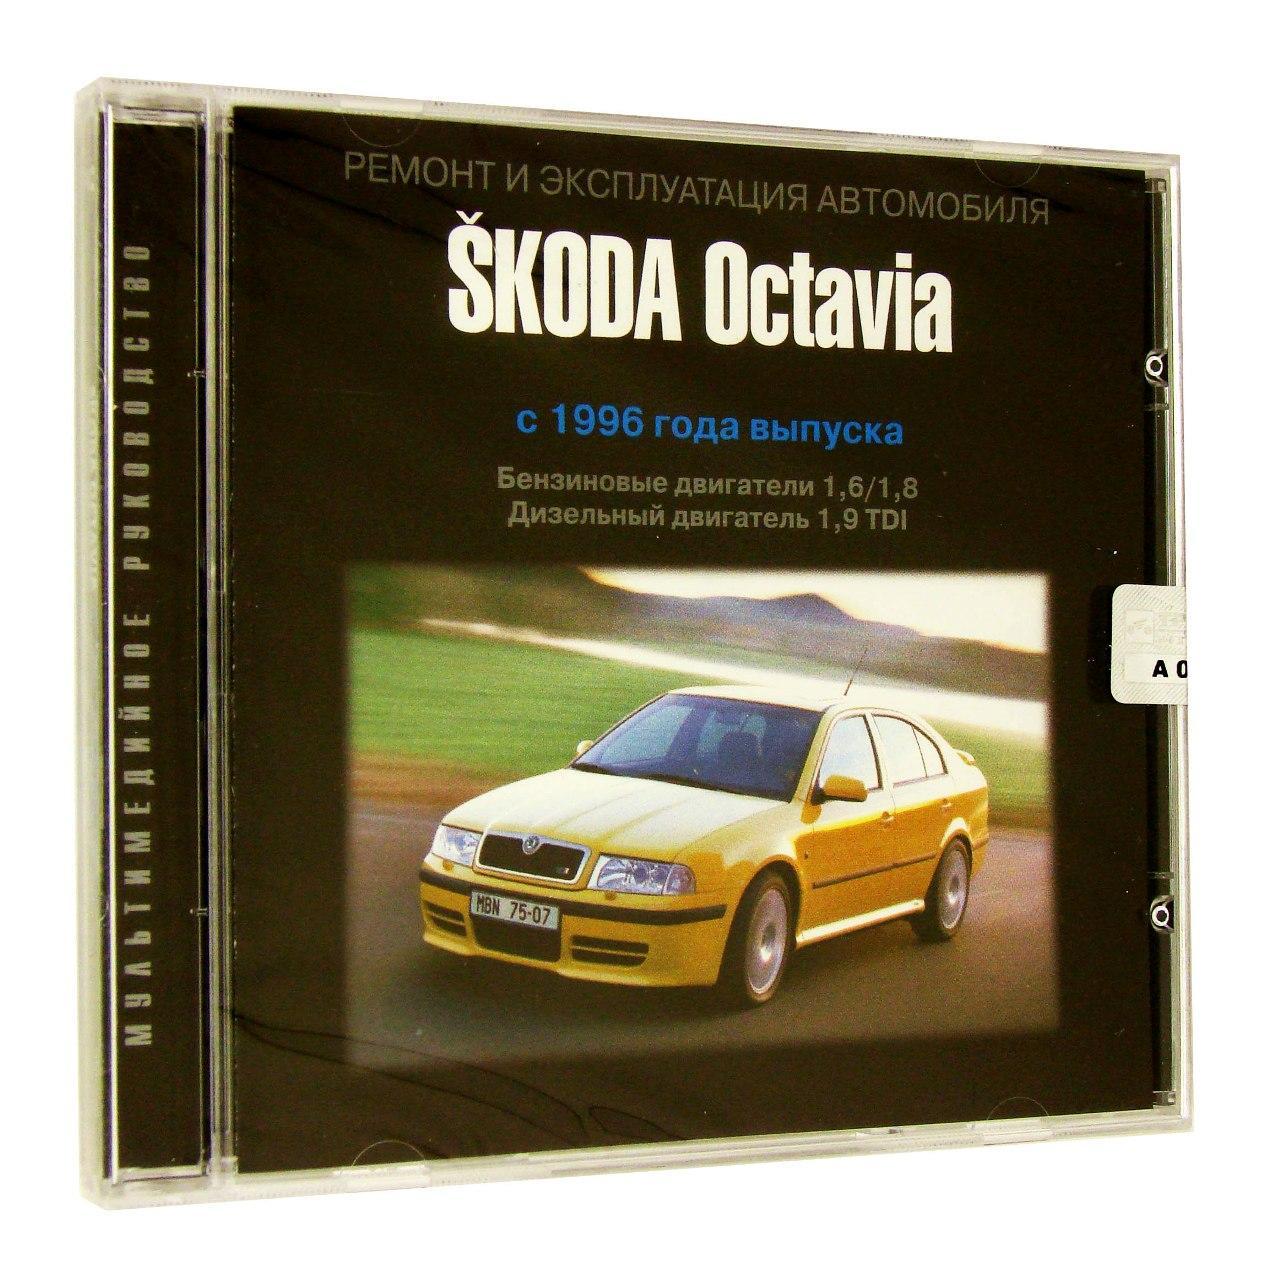 Компьютерный компакт-диск Skoda Octavia c 1996 Ремонт и эксплуатация автомобиля. (ПК), фирма "Третий Рим", 1CD